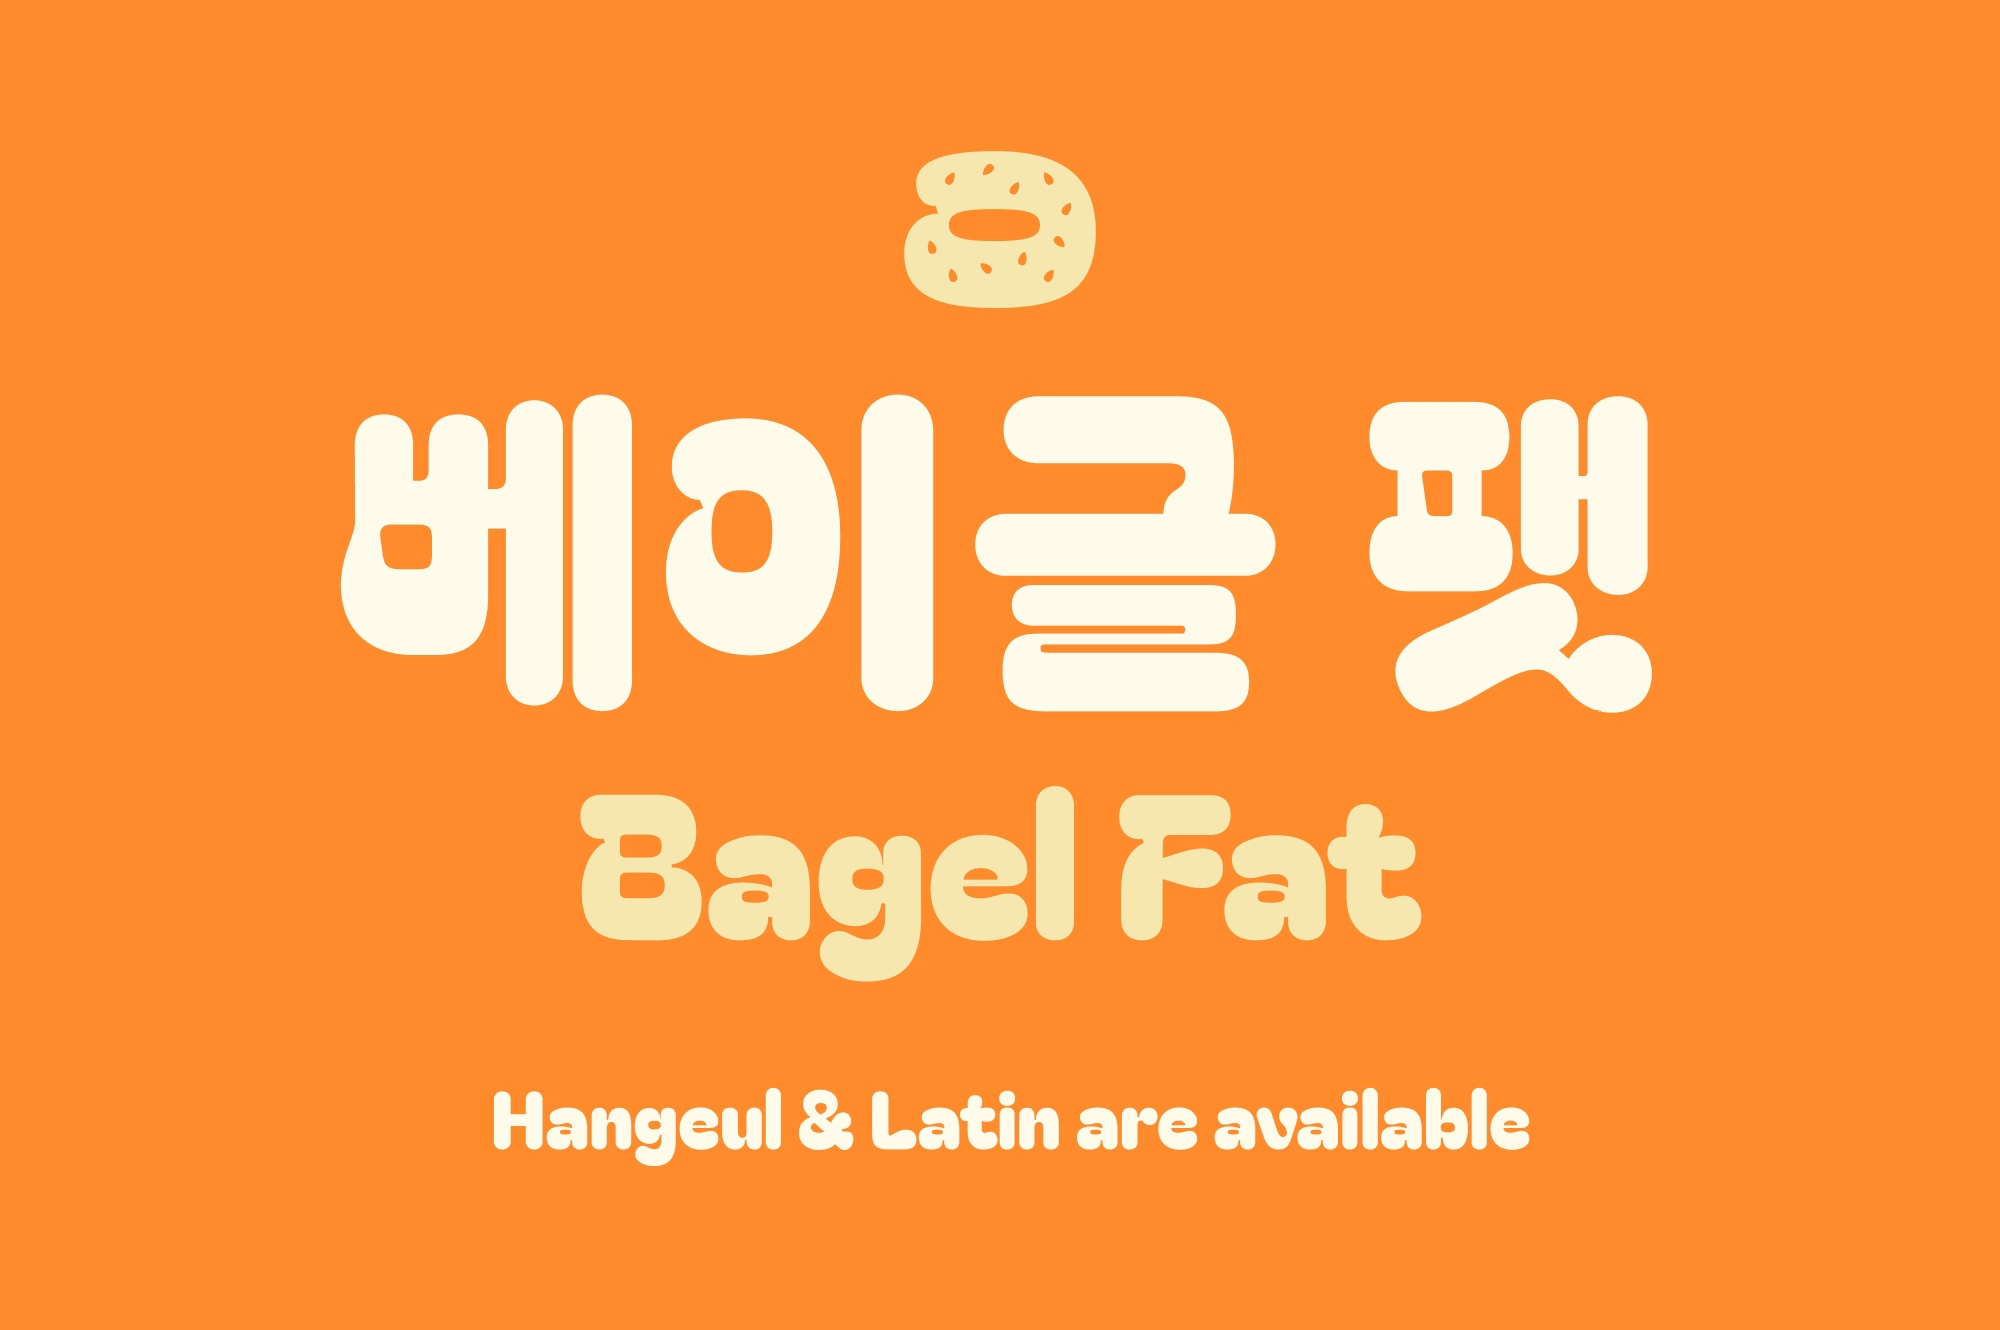 Bagel Fat